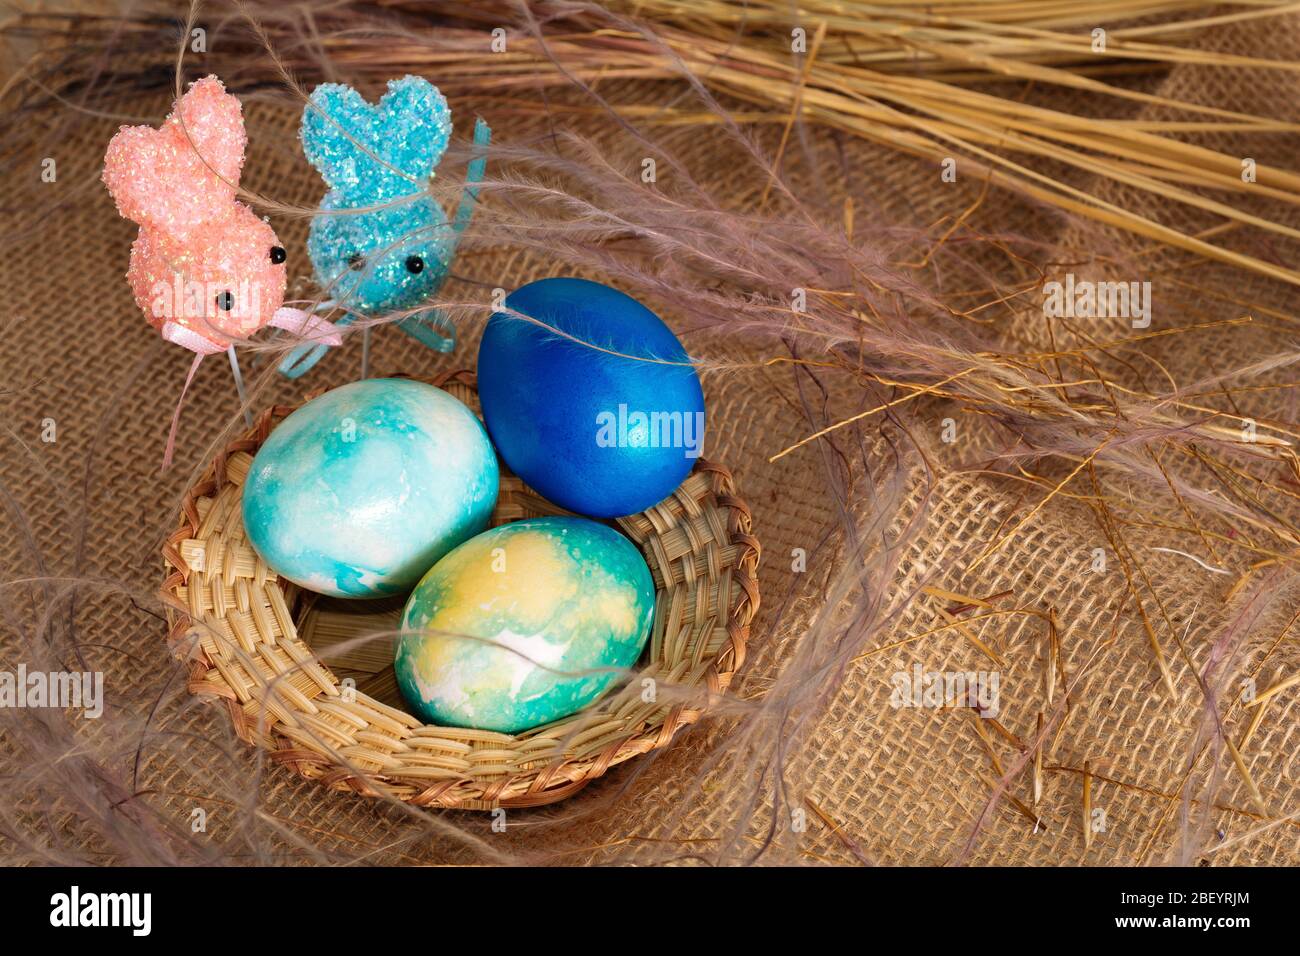 Uova pasquali multicolore dai toni blu e due coniglietti pasquali su un bastone su uno sfondo di stoffa marrone. Foto Stock